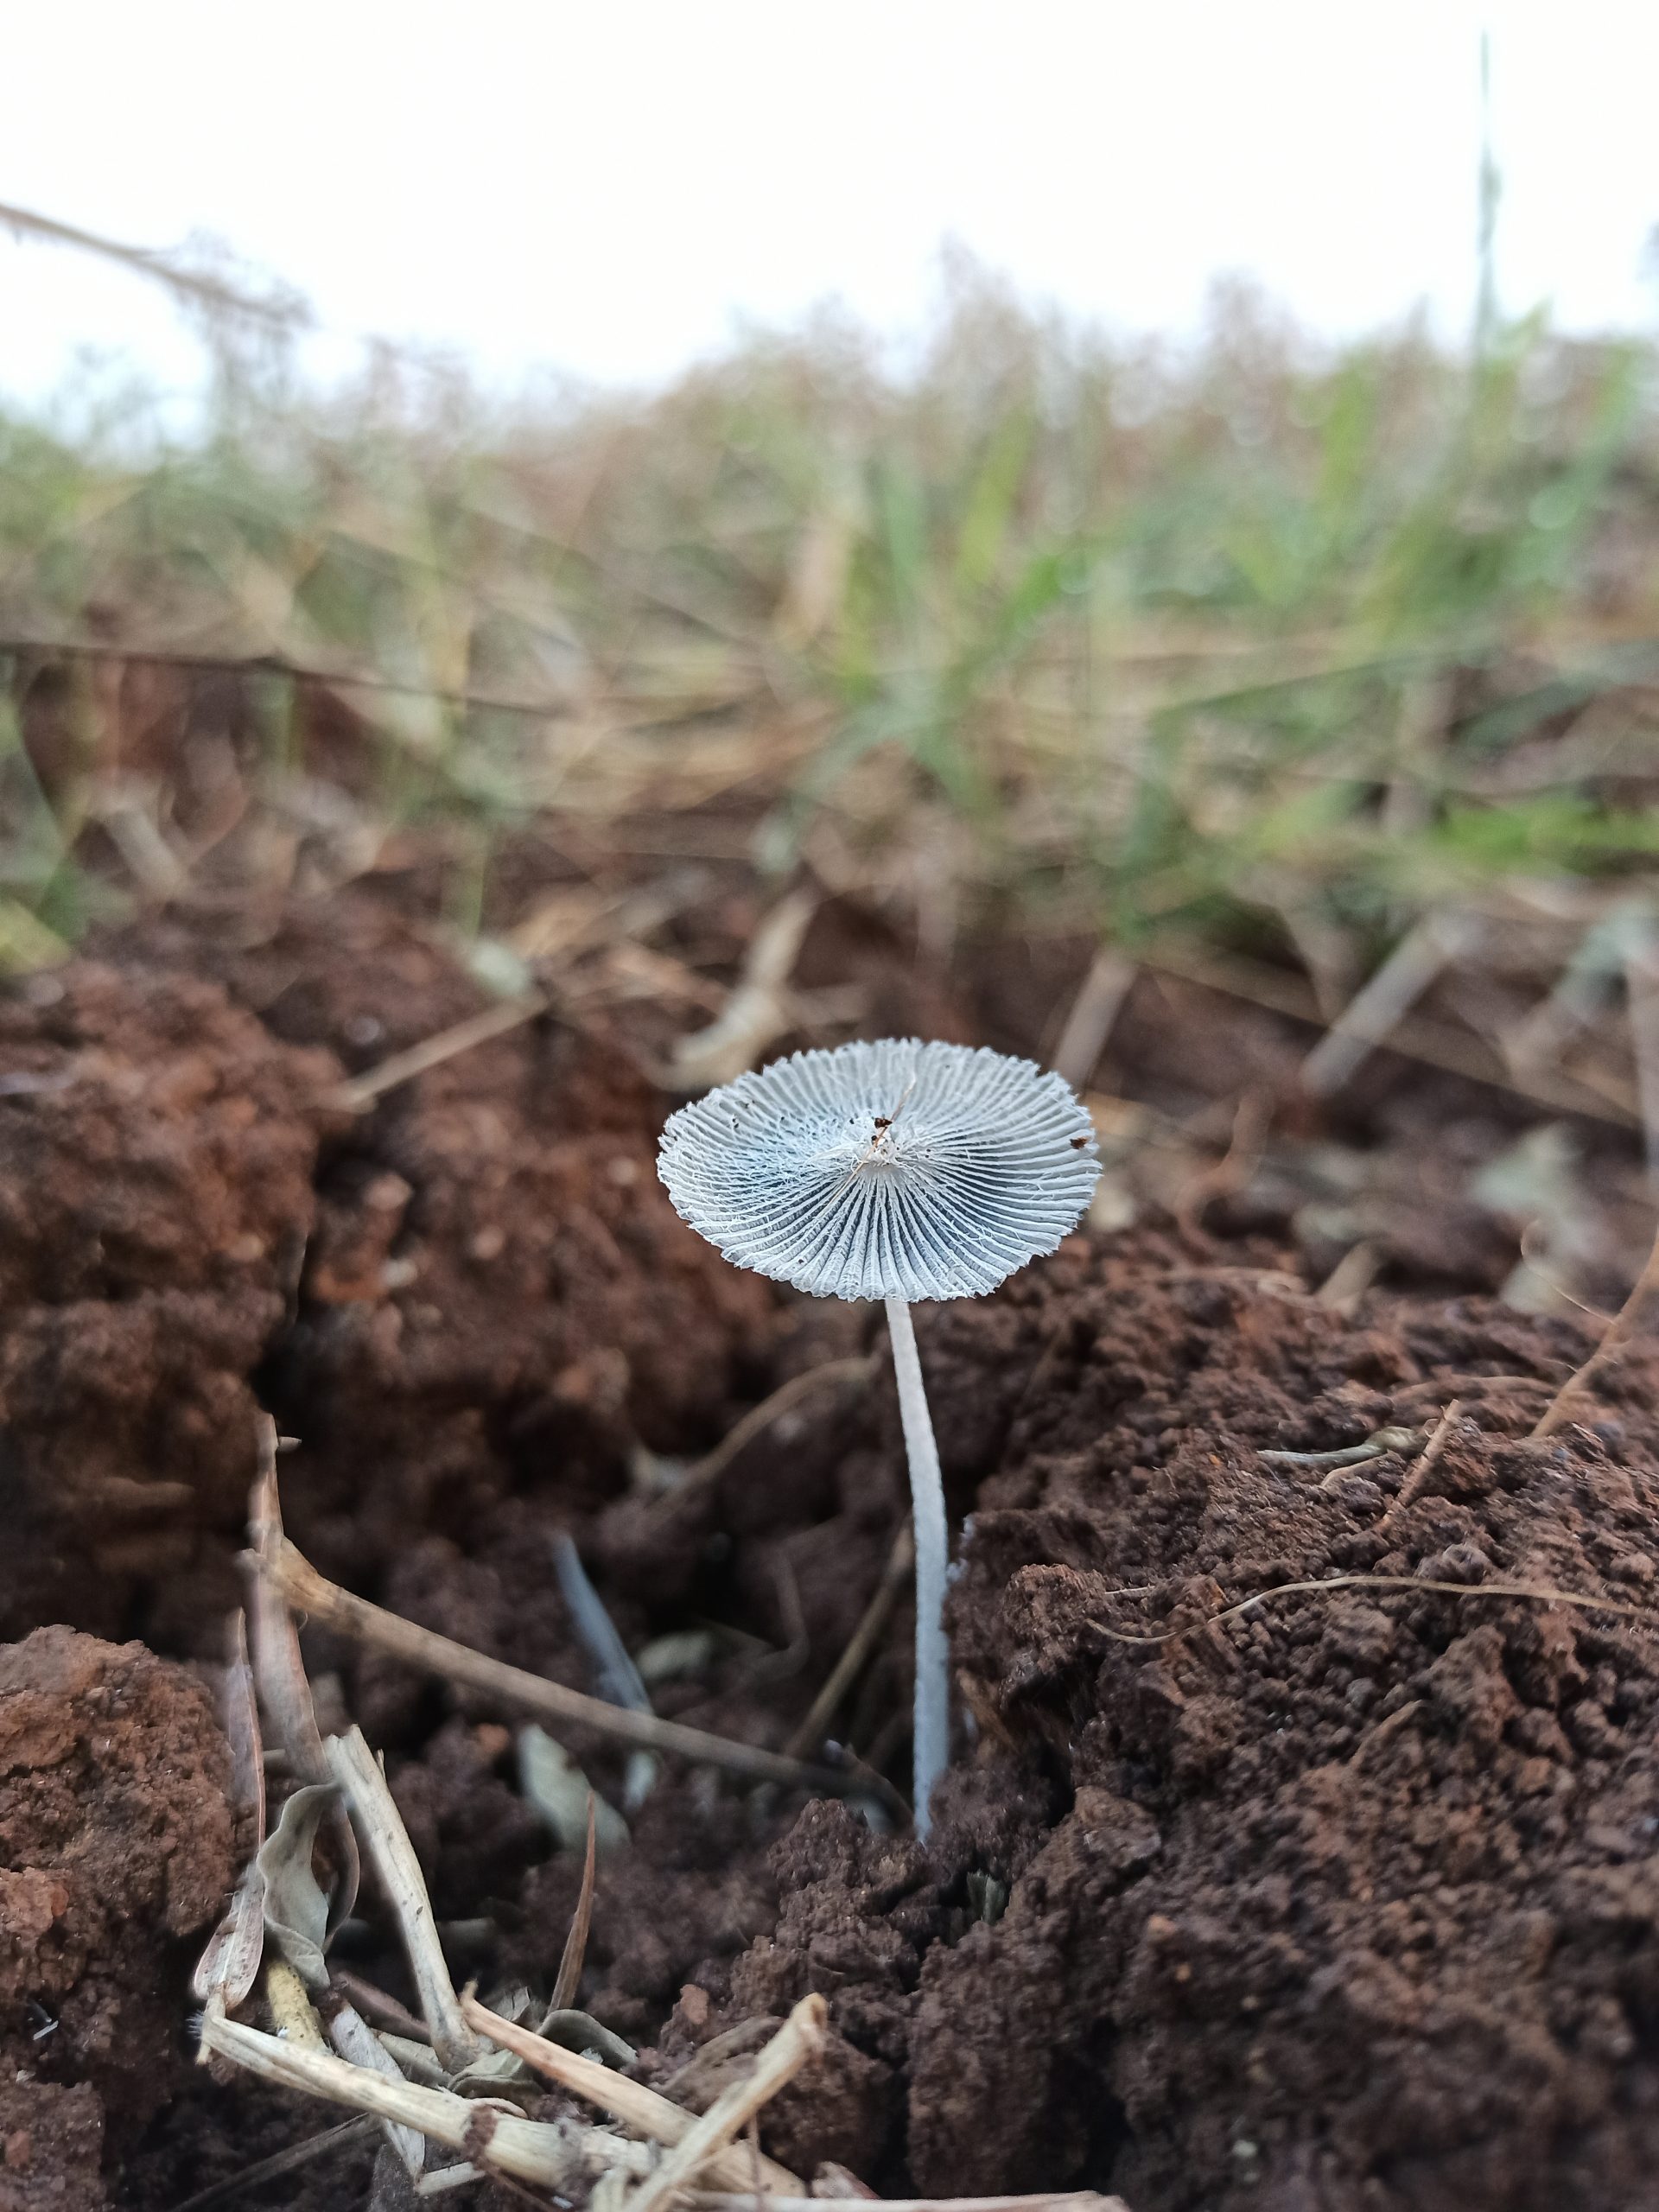 Little Mushroom crop in farm